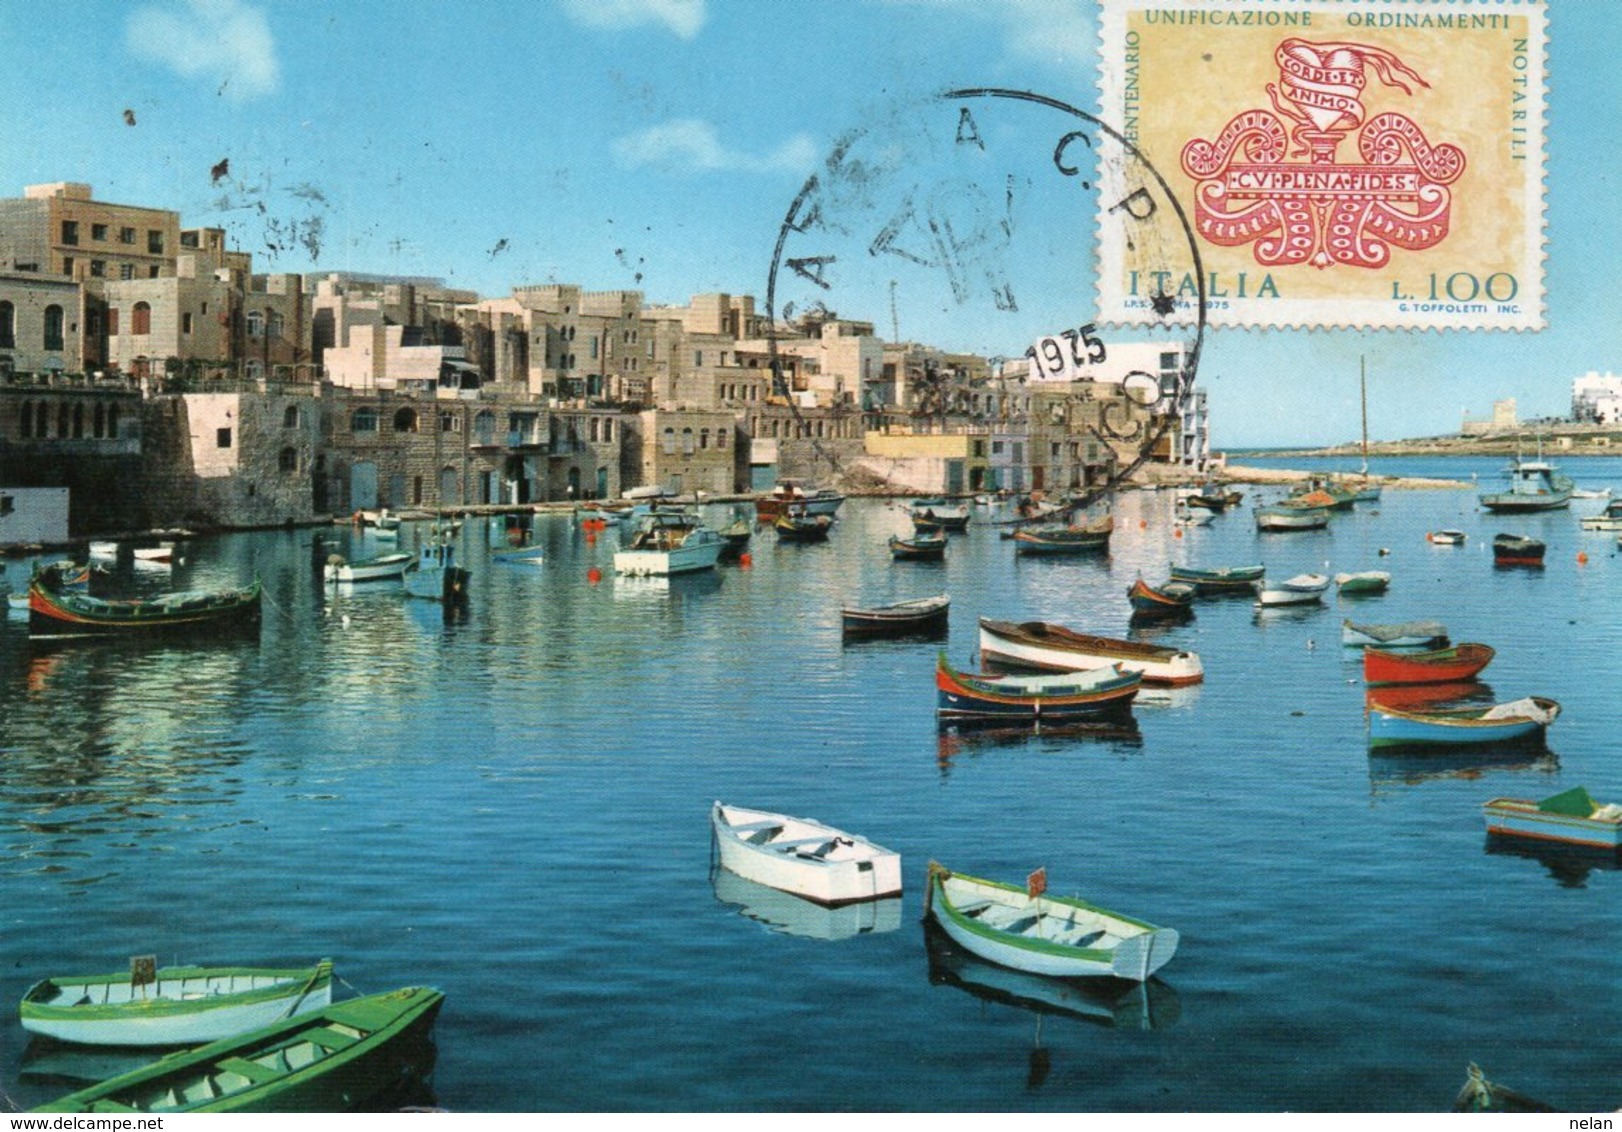 MALTA-CATANIA C. P. FILATELICO 1975-F.G. - Malta